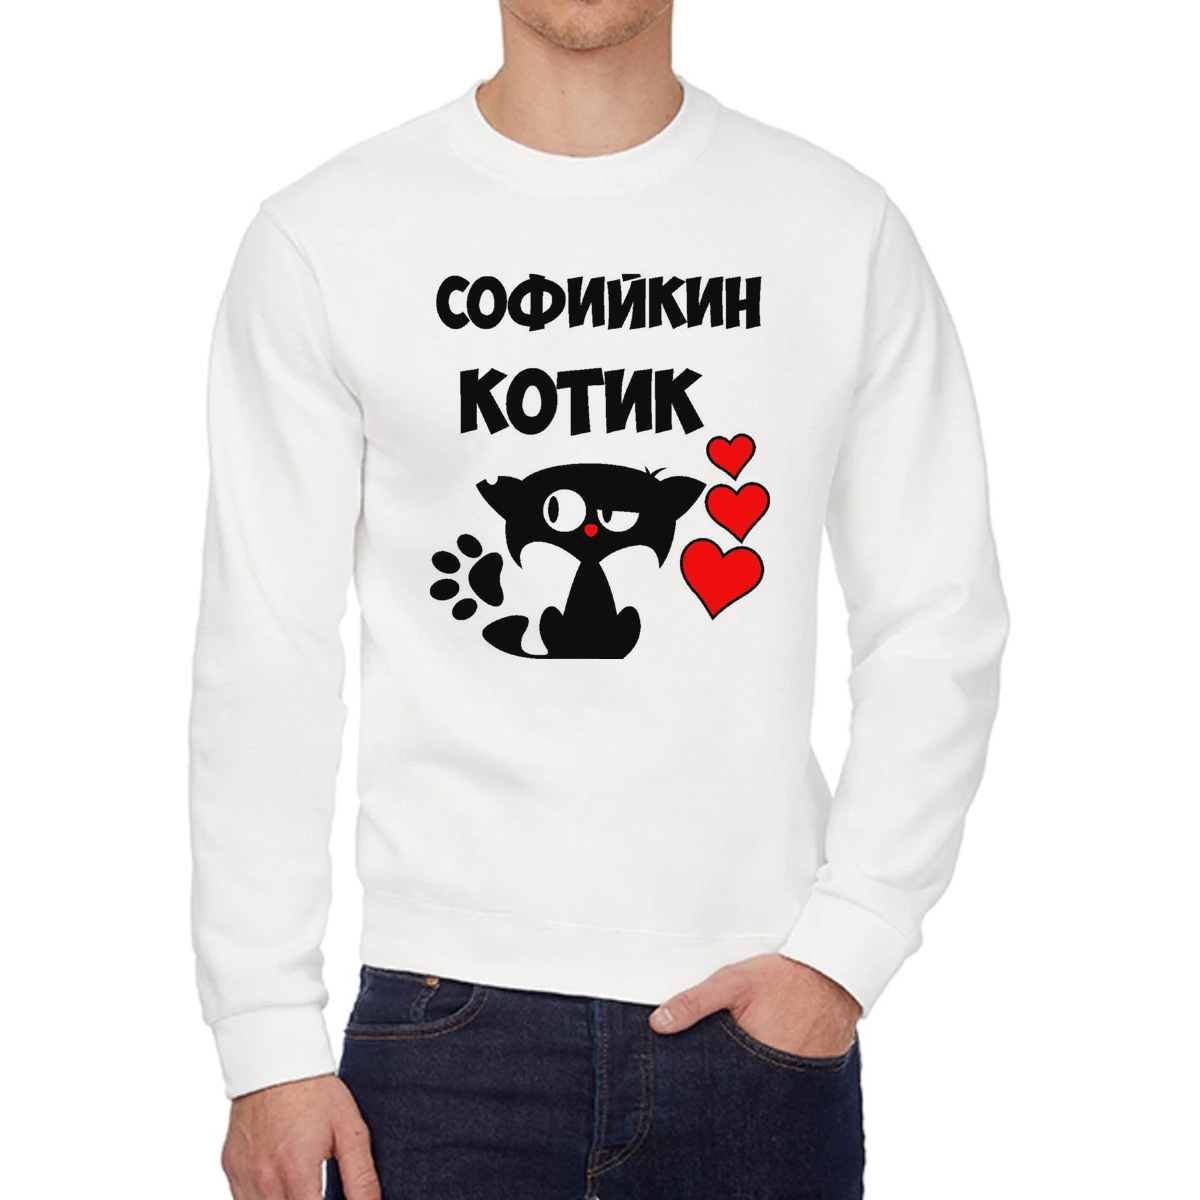 Свитшот мужской CoolPodarok Софийкин котик белый 48 RU